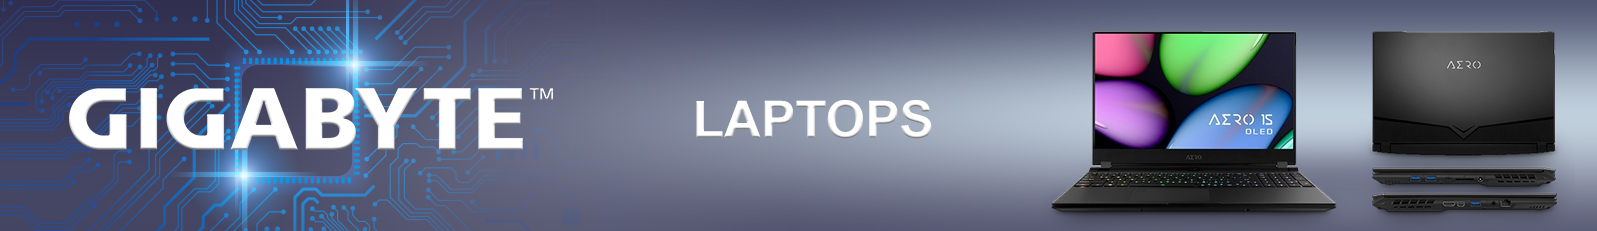 Gigabyte AERO Laptops